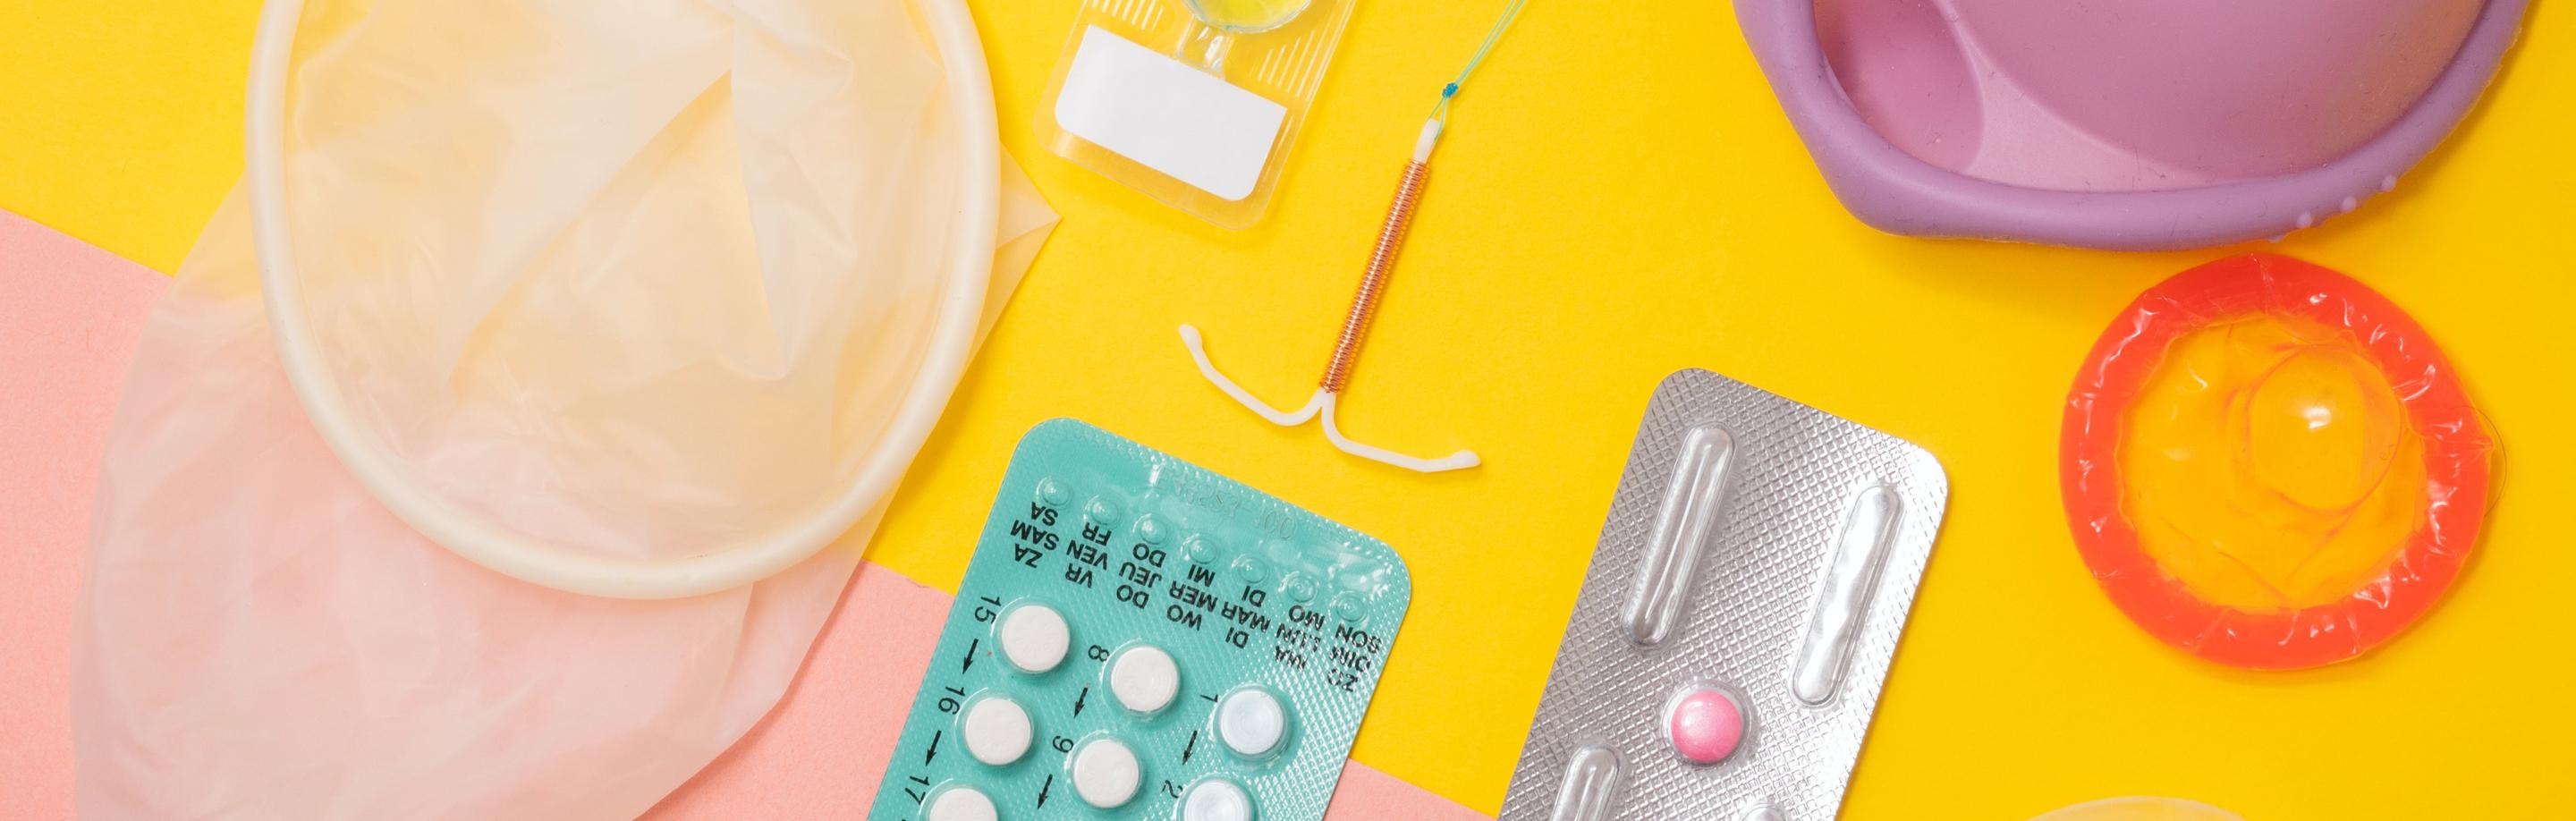 Eine Collage mit verschiedenen Mitteln zur Verhütung, z.B. Pille, Kondom und Spirale